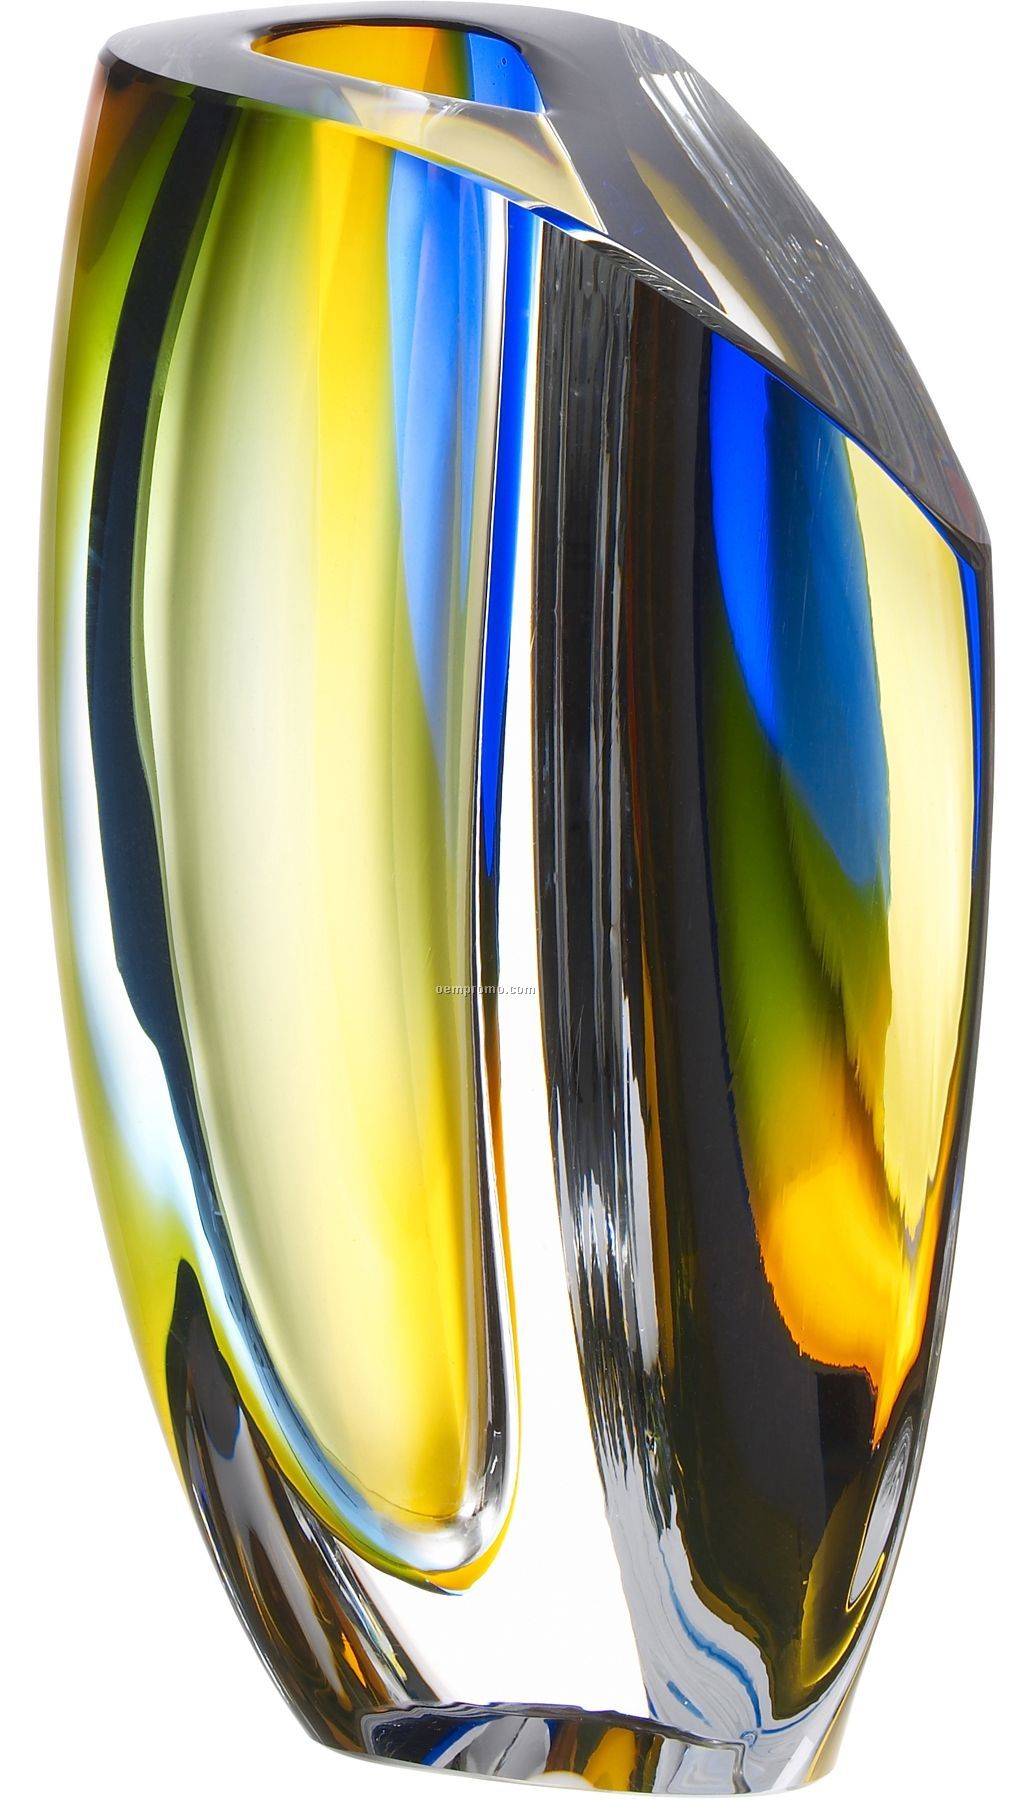 Mirage Glass Vase By Goran Warff (Blue & Amber)